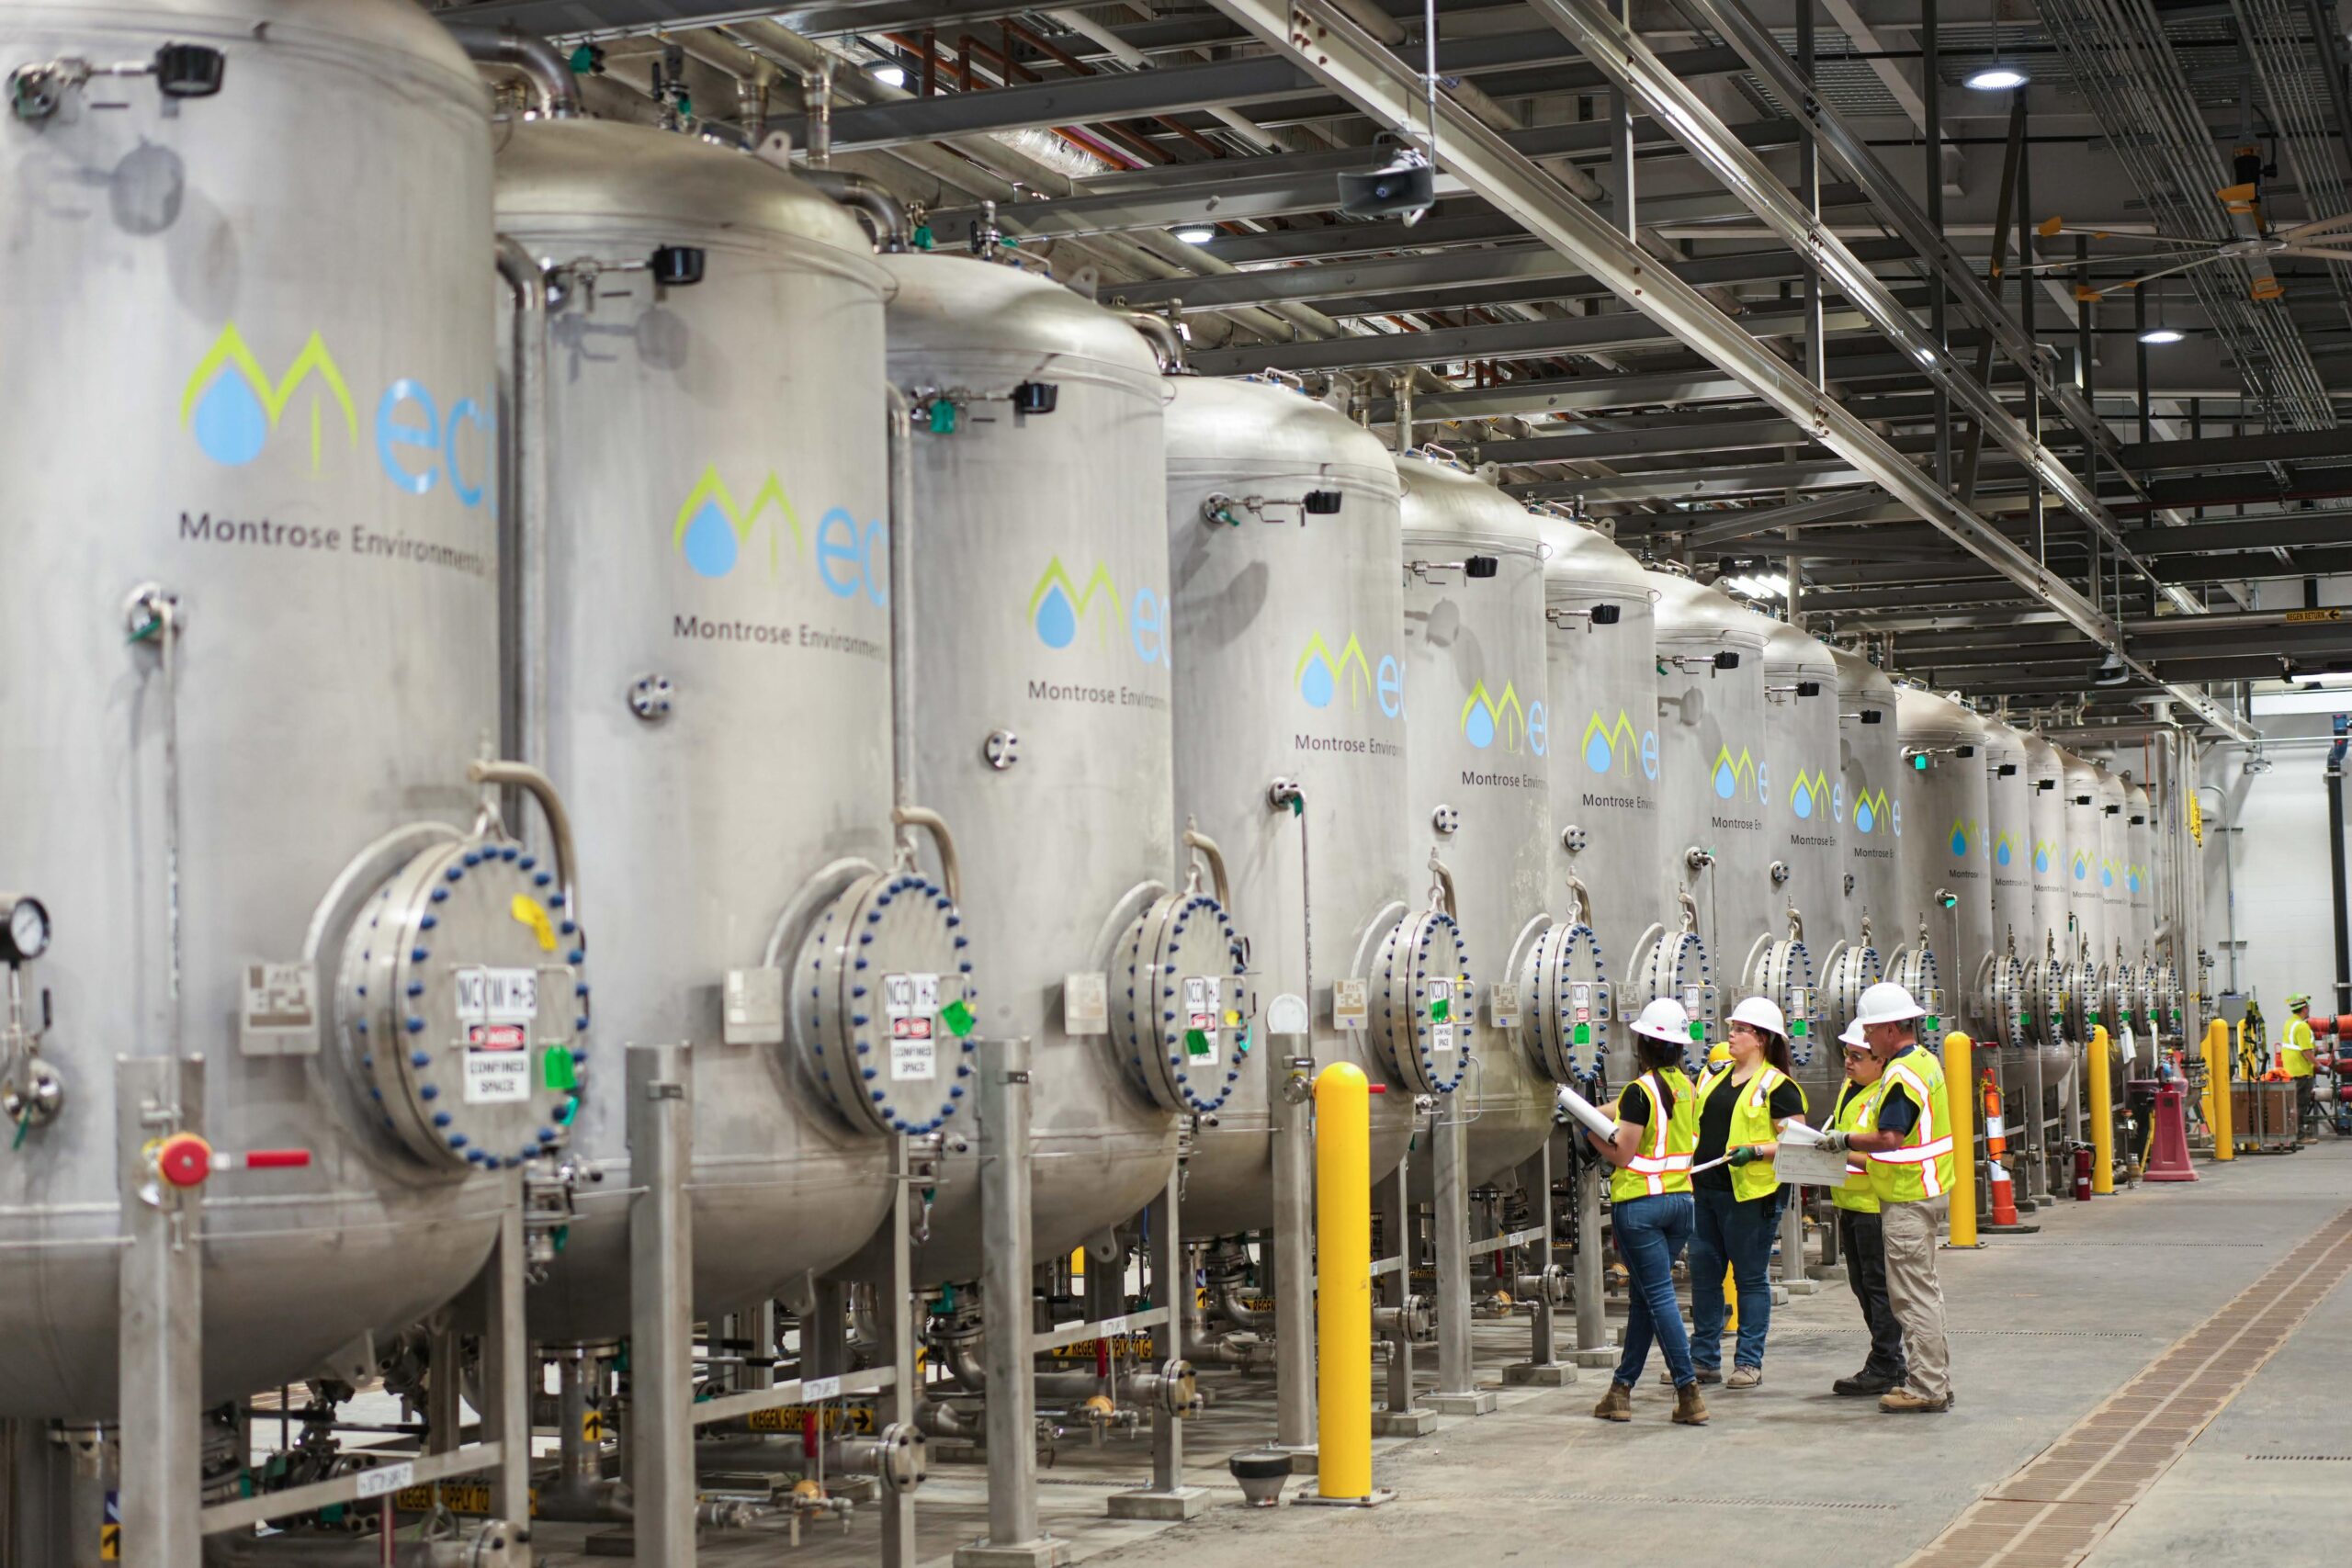 ECT2 built the world’s largest PFAS remediation plant. It uses regenerable ion exchange technology.